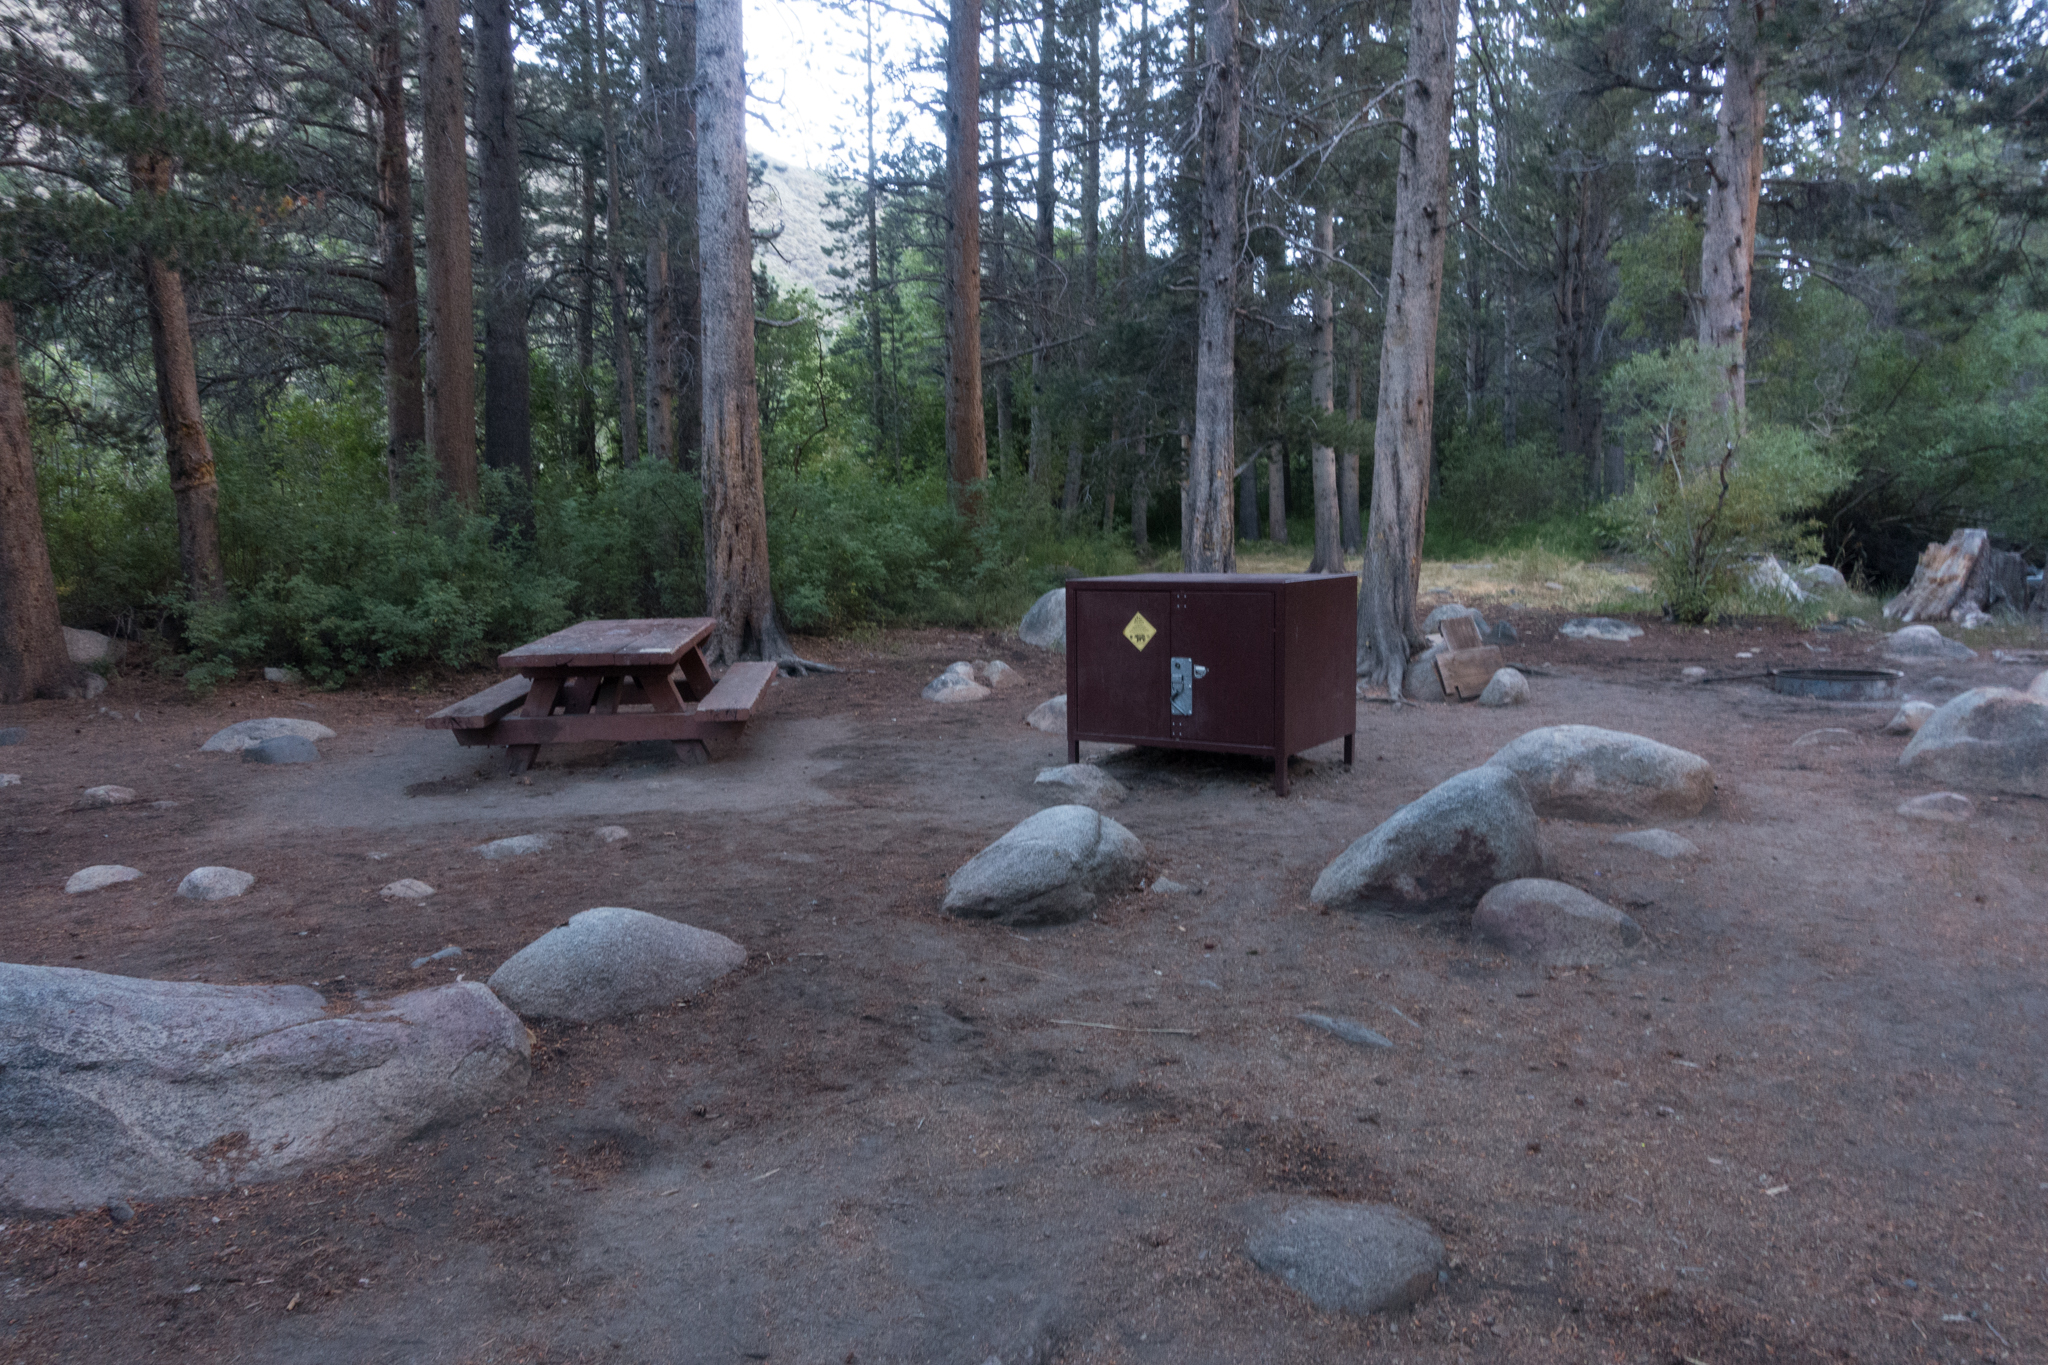 Empty campsite